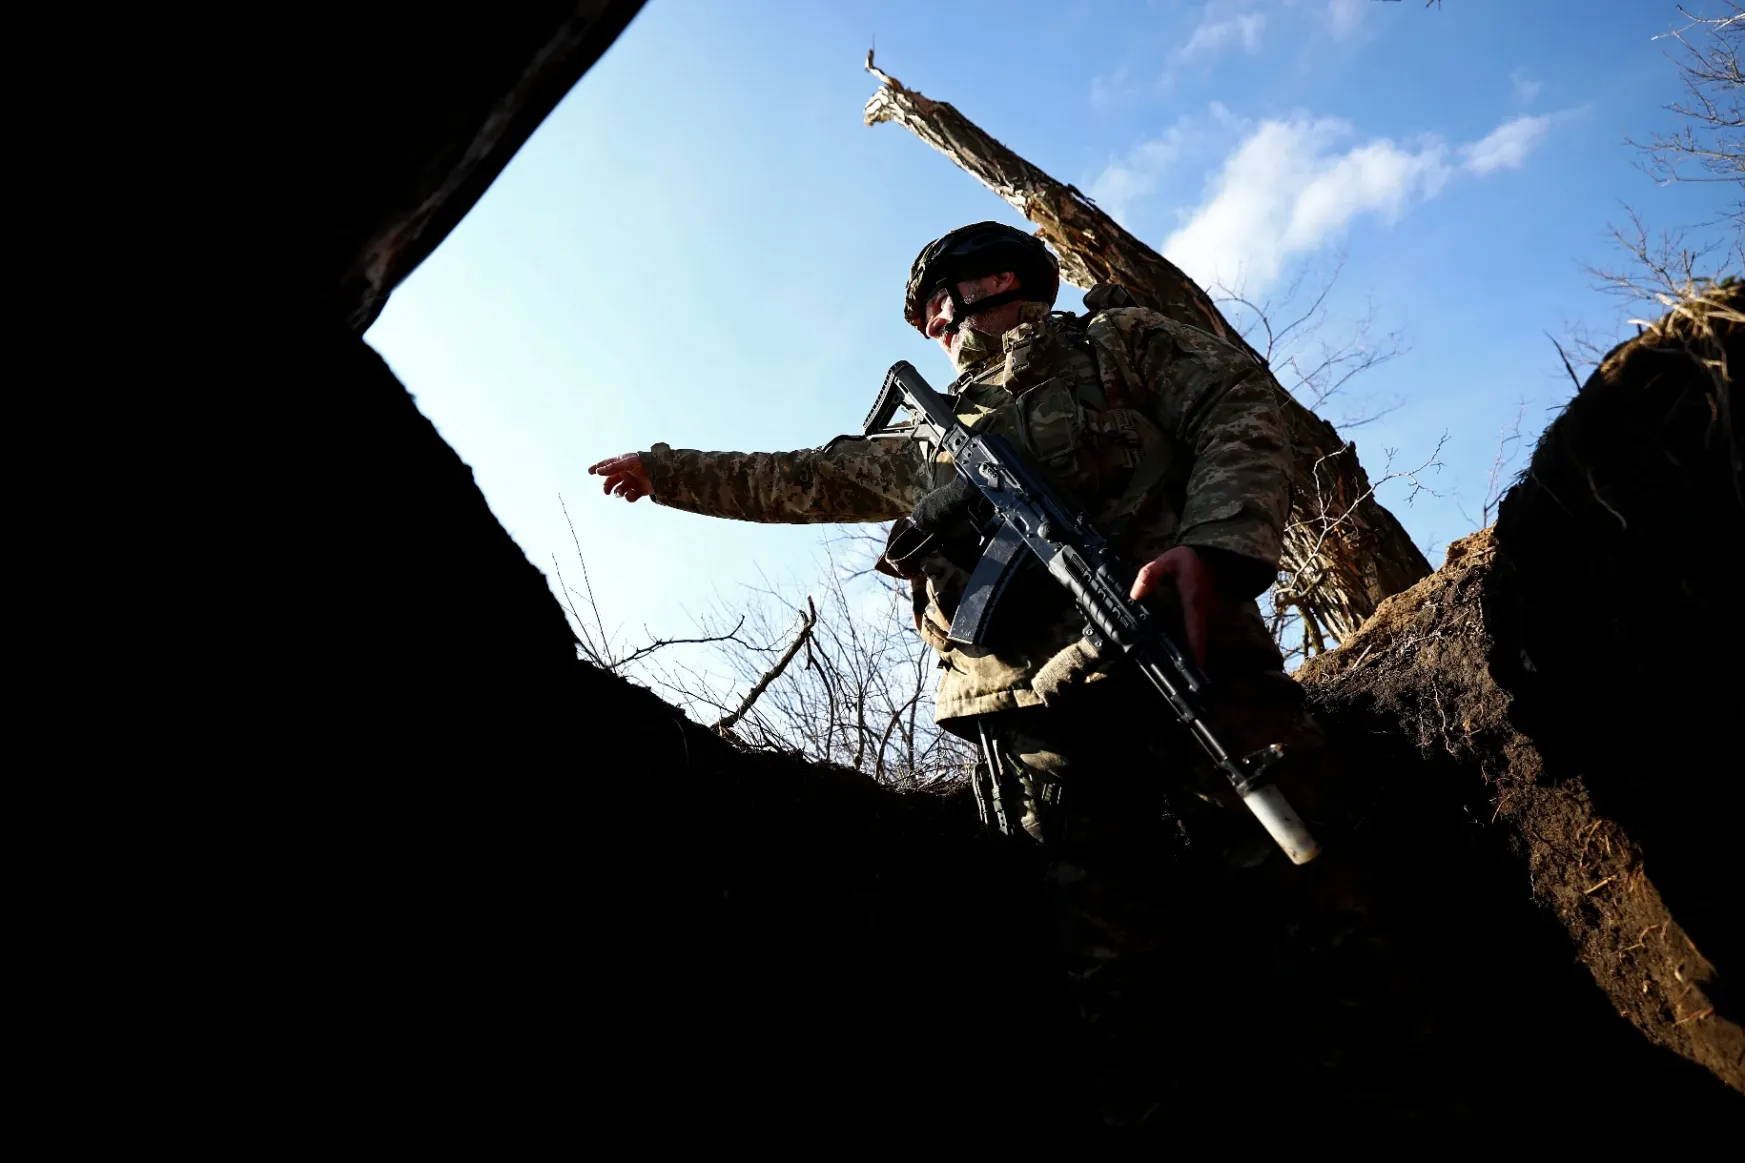 Brit védelmi minisztérium: Az oroszoknak sokszor annyira nincs lőszerük, hogy gyalogsági ásókat használnak rohamfegyverként